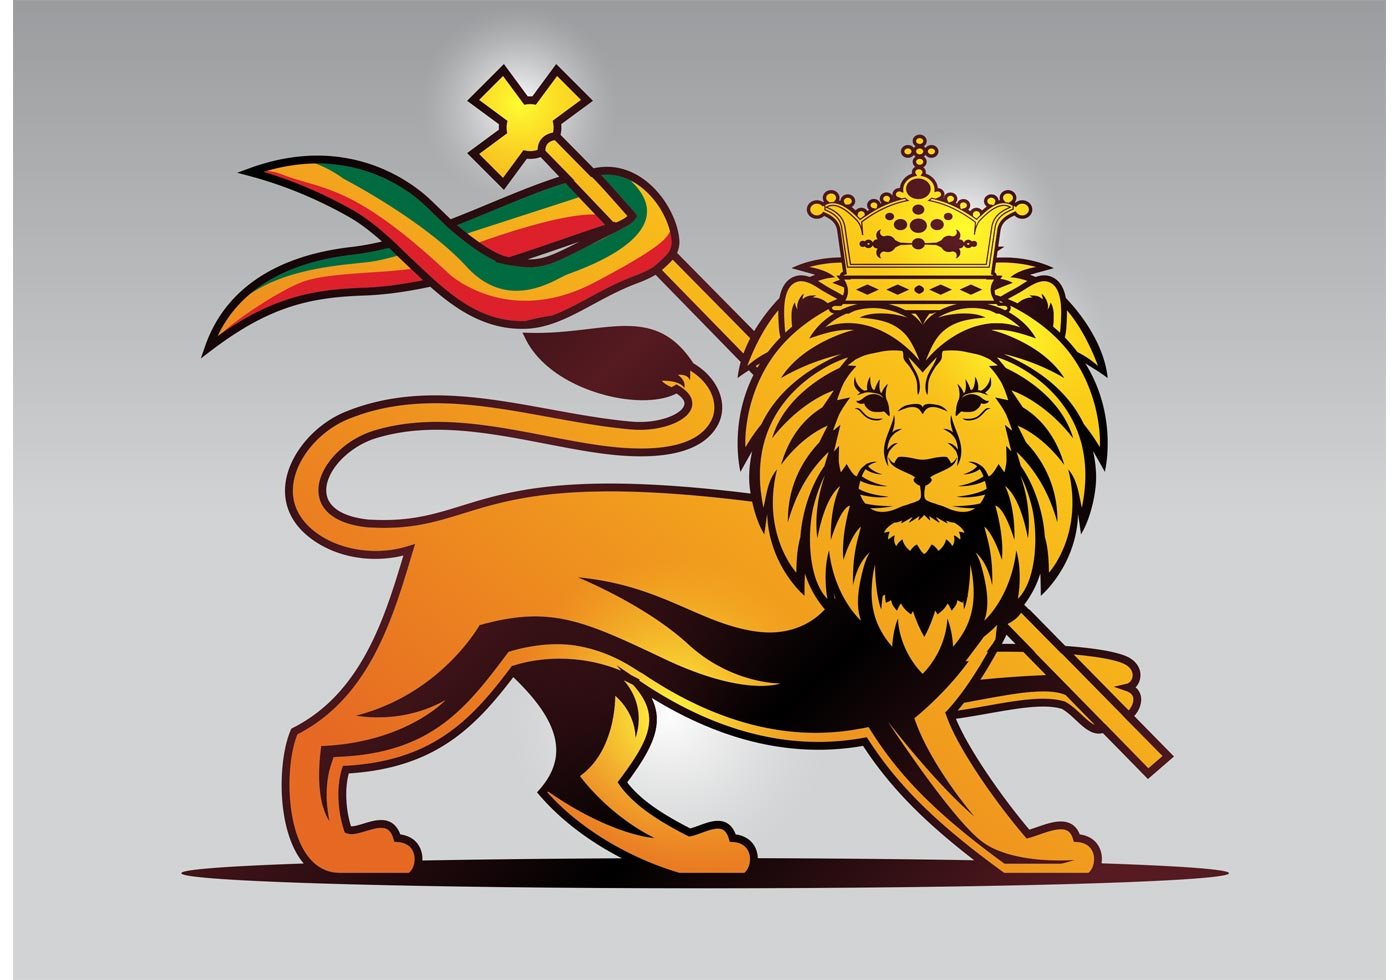 Герб где лев. Lion of Judah. Флаг Эфиопии со львом. Герб со львом.